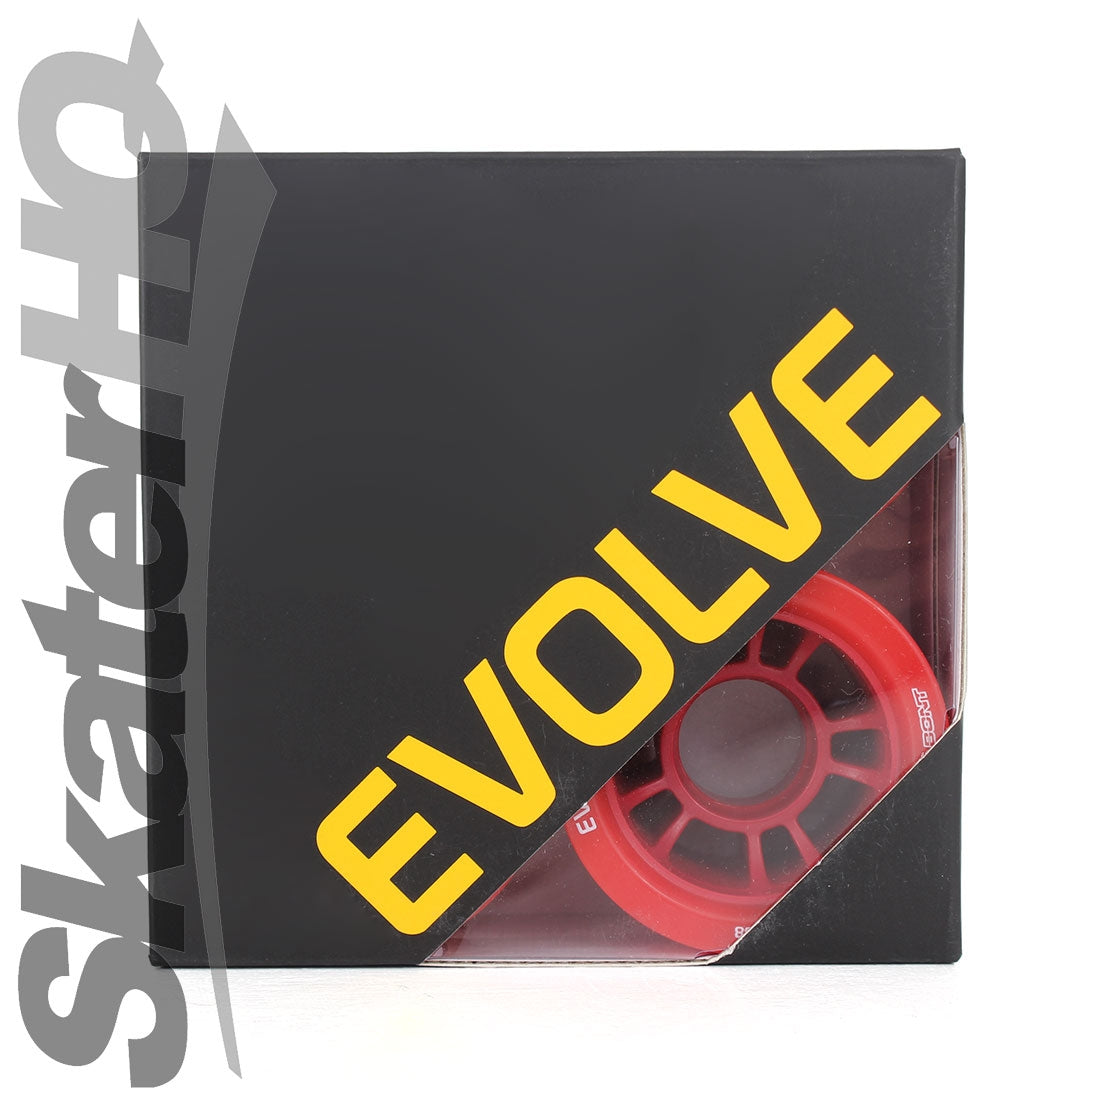 Bont Evolve Derby 59x38mm 95a 4pk - Red Roller Skate Wheels